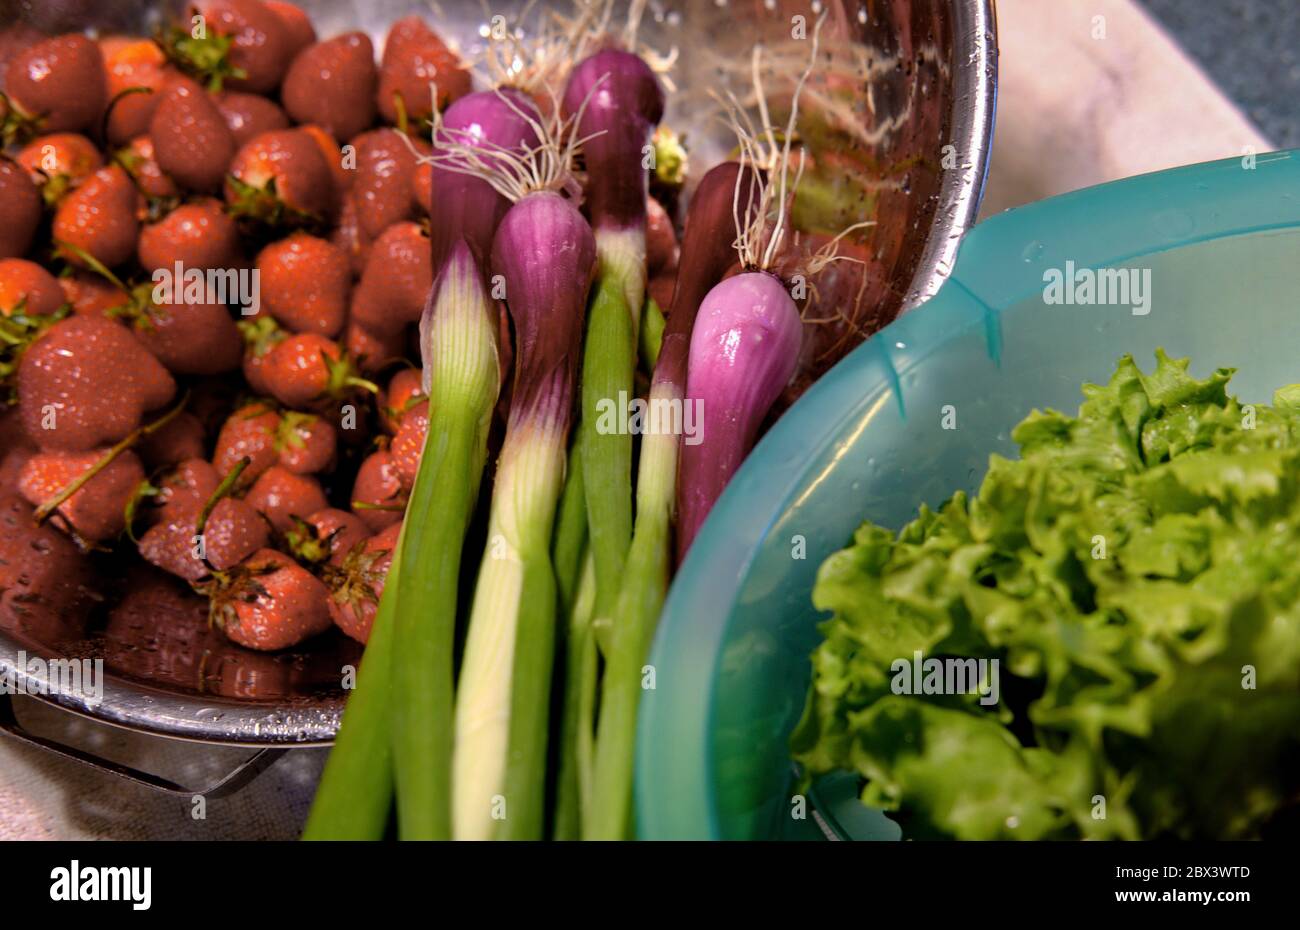 Frische Erdbeeren, rot-grüner BIBB-Salat und rote Frühlingszwiebeln von einem lokalen Delaware CSA-Betrieb (Community Supported Agriculture). Stockfoto